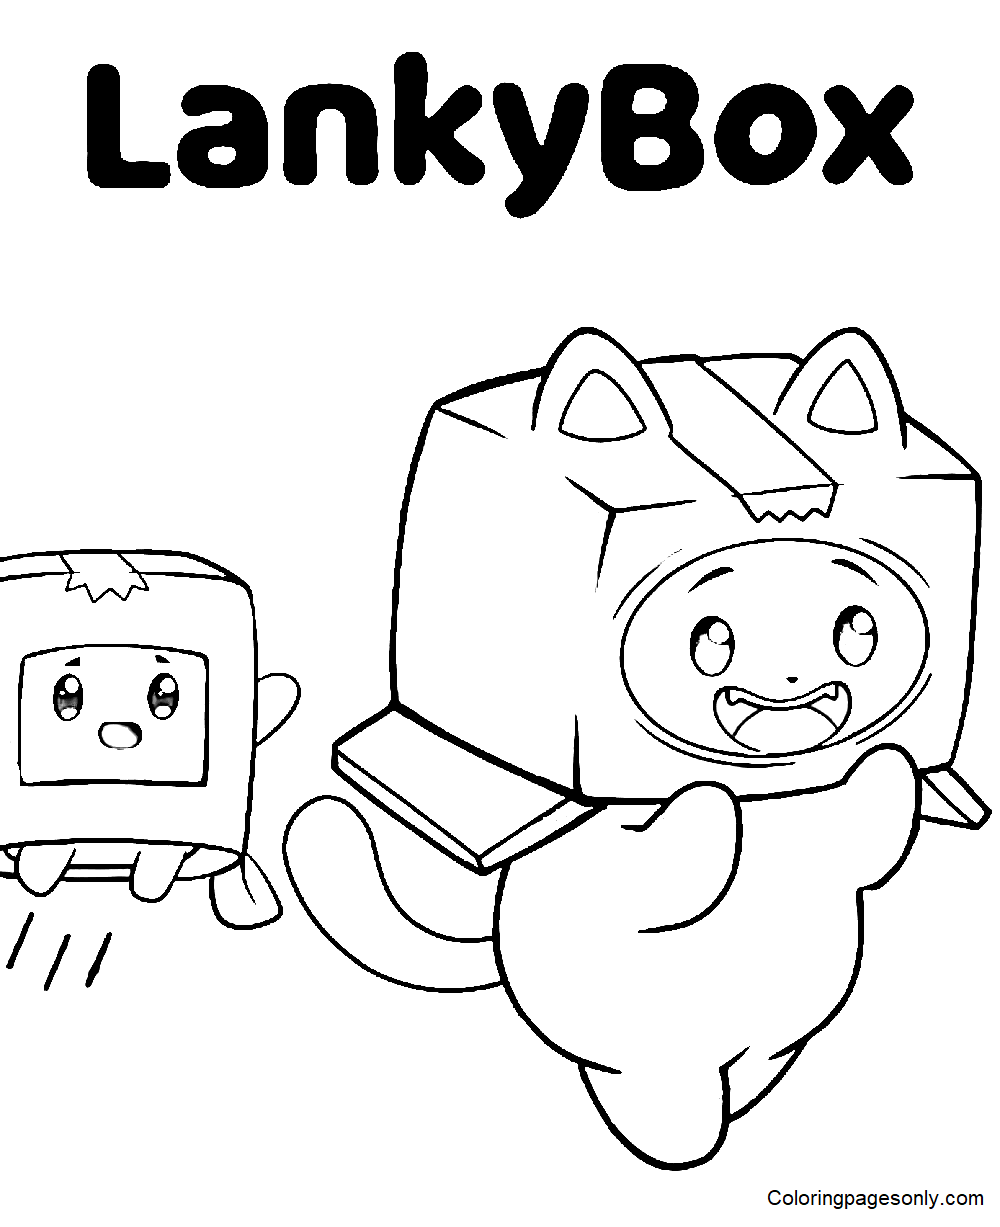 Pagina da colorare di fogli LankyBox stampabili